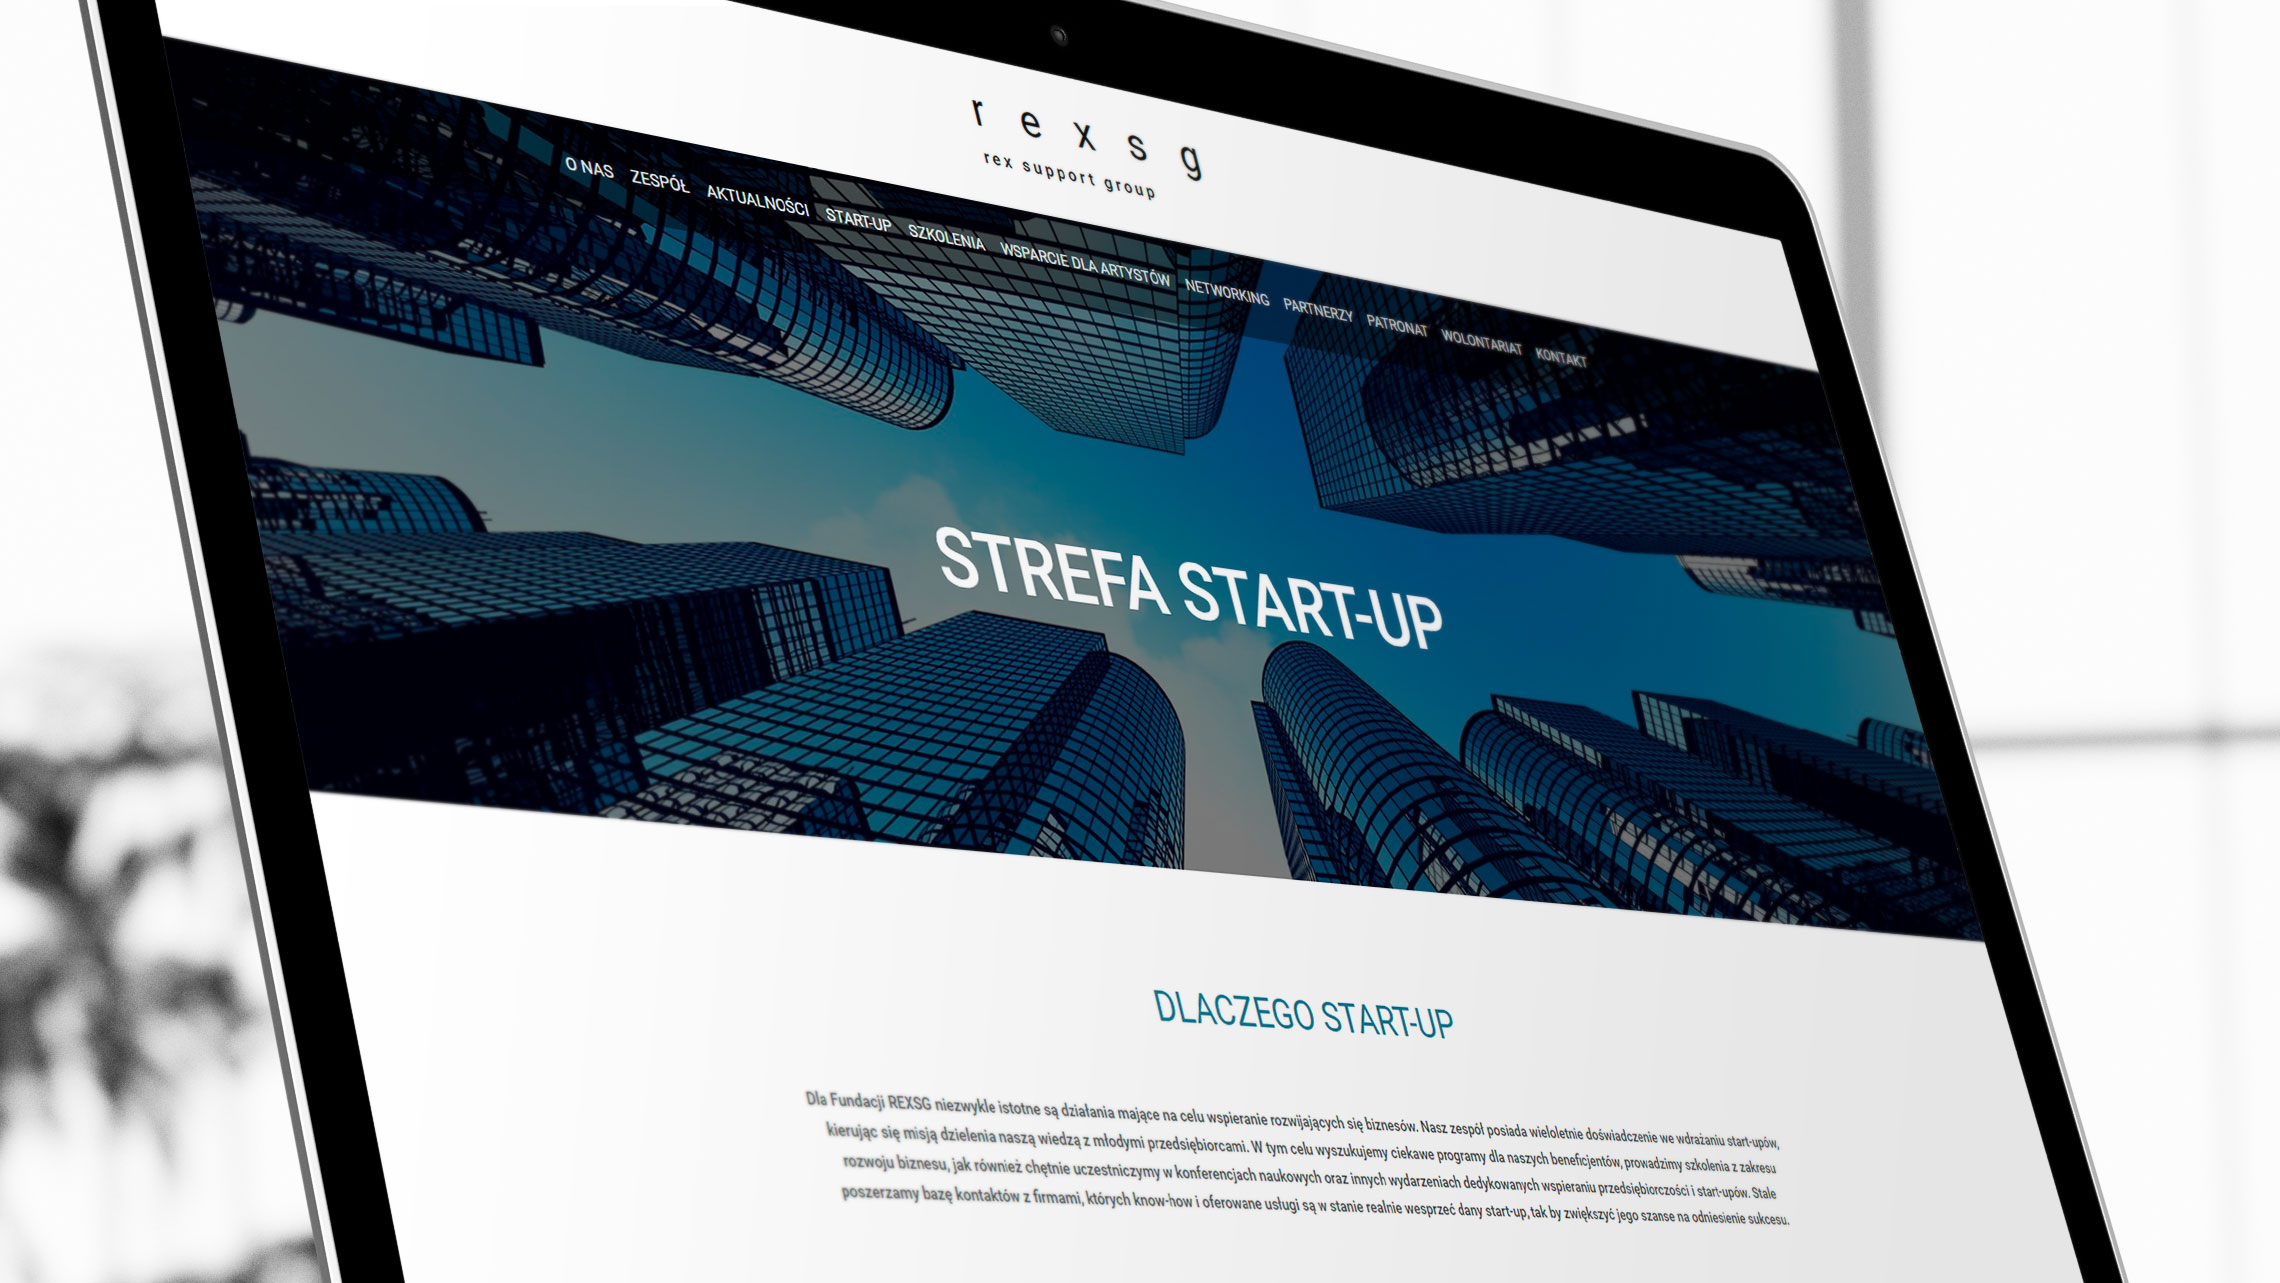 Sekcja start-up na stronie internetowej fundacji Rex SG